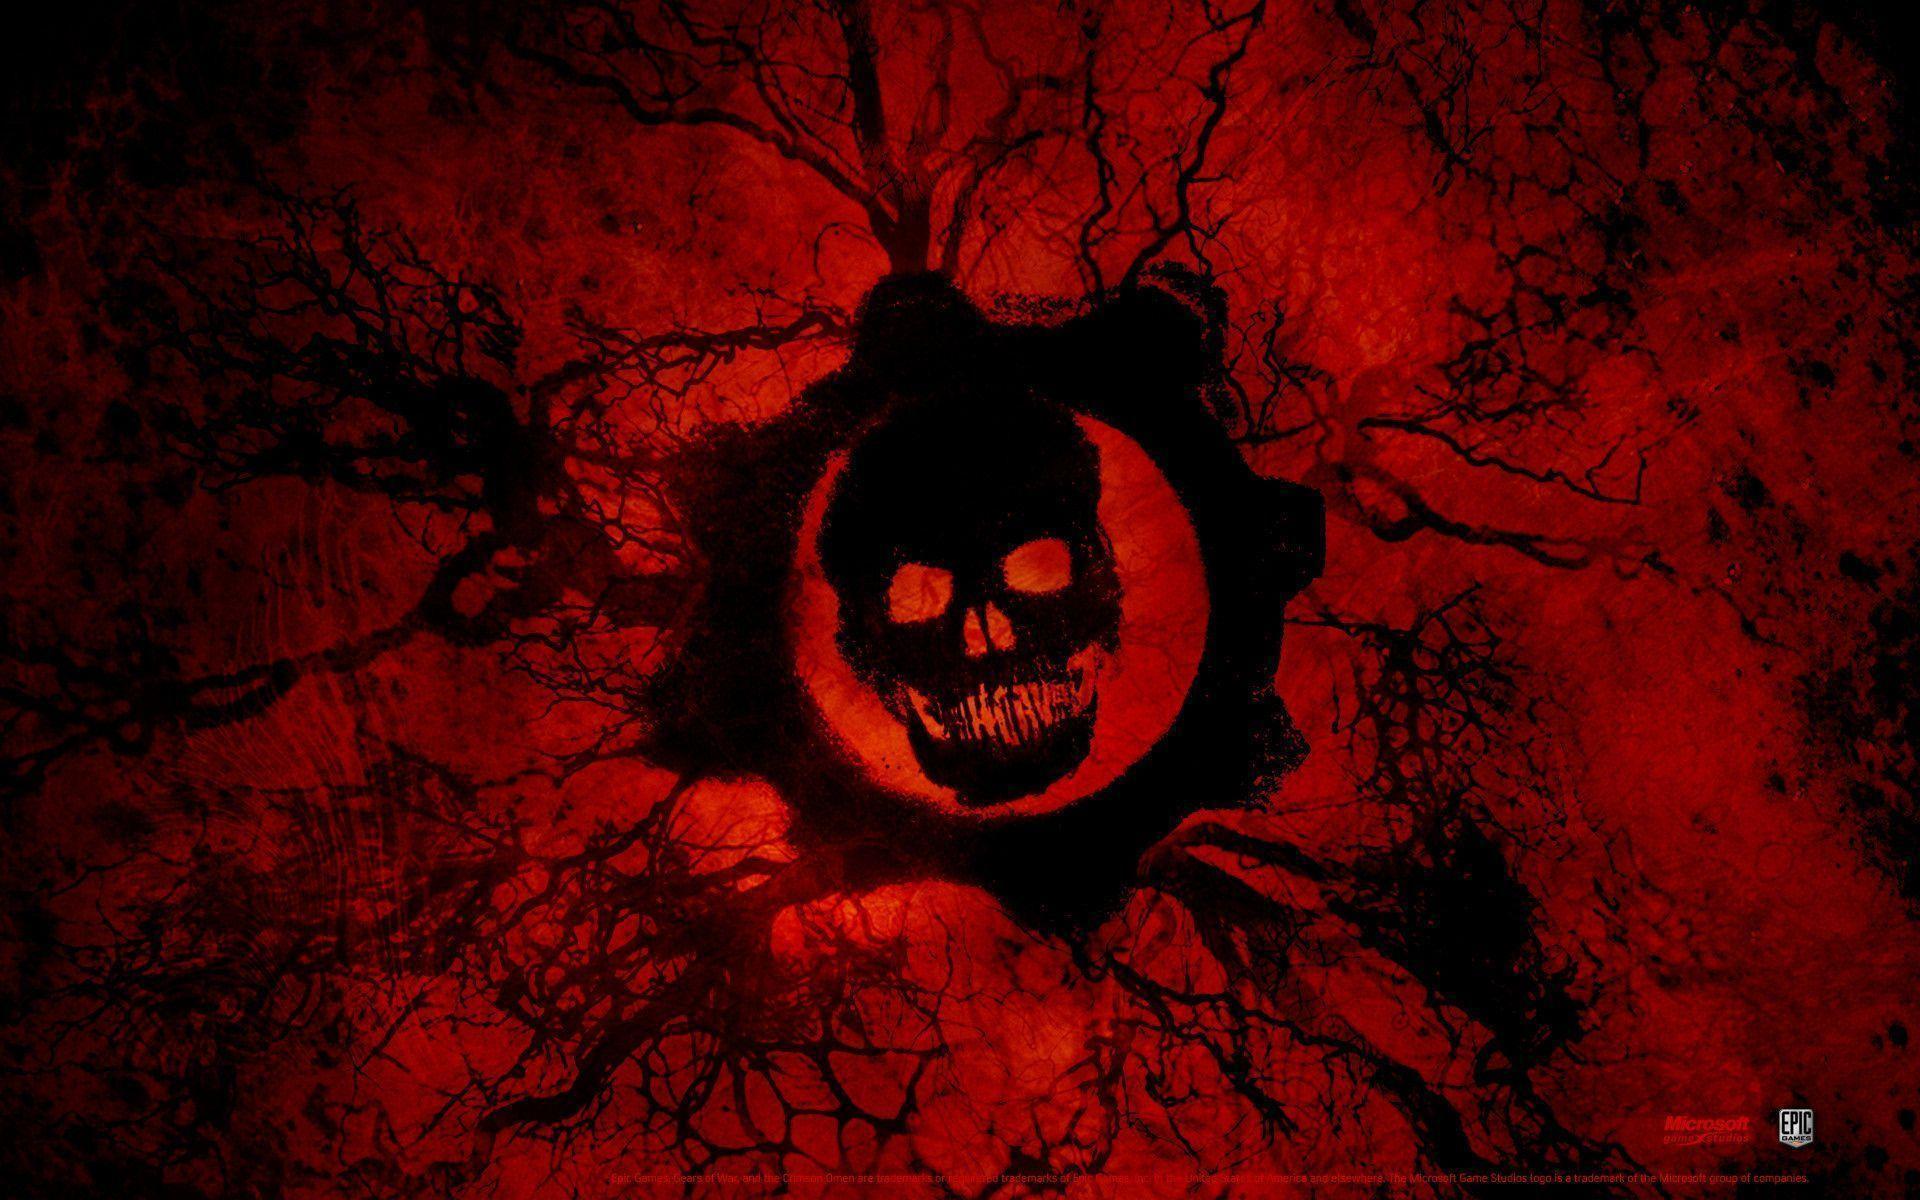 Gears of War 3 Wallpaper (HD)